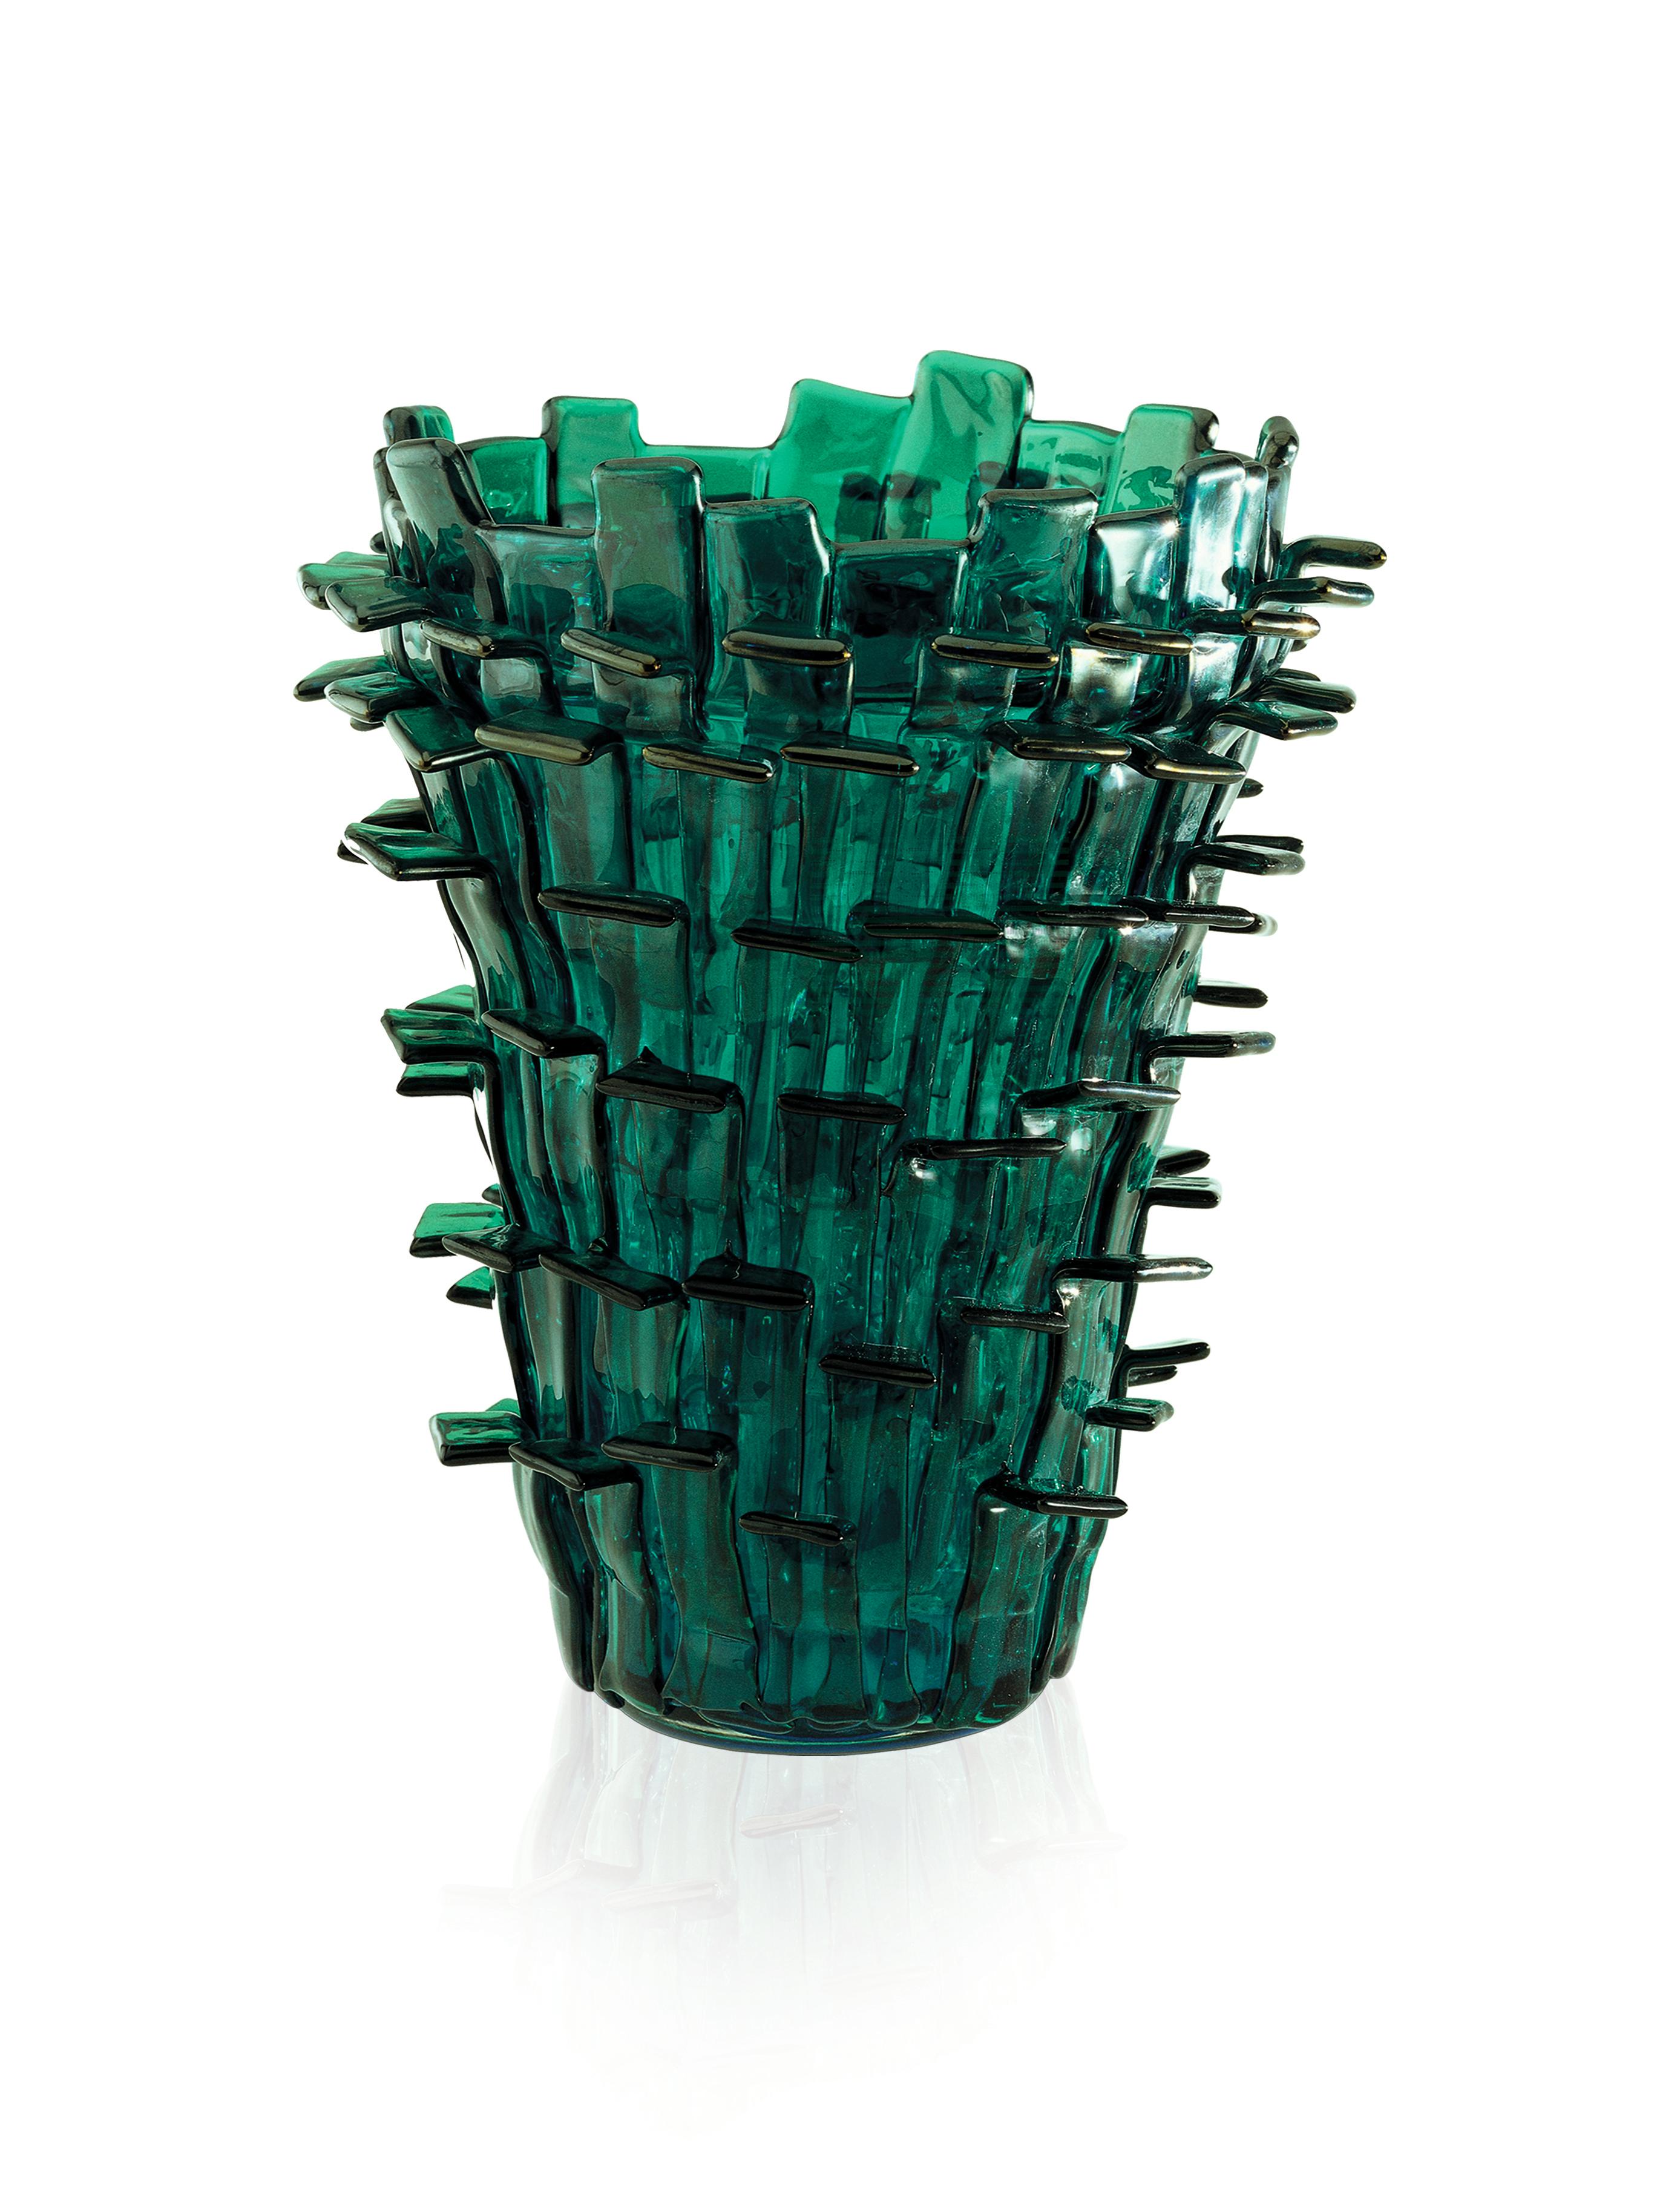 Venini-Glasvase in schillerndem Grün und Aquamarin, entworfen von Fulvio Bianconi im Jahr 1989. Perfekt für die Inneneinrichtung als Blumenvase oder als Schmuckstück für jeden Raum. Nummerierte Ausgabe für das Jahr.

Abmessungen: 22 cm Durchmesser